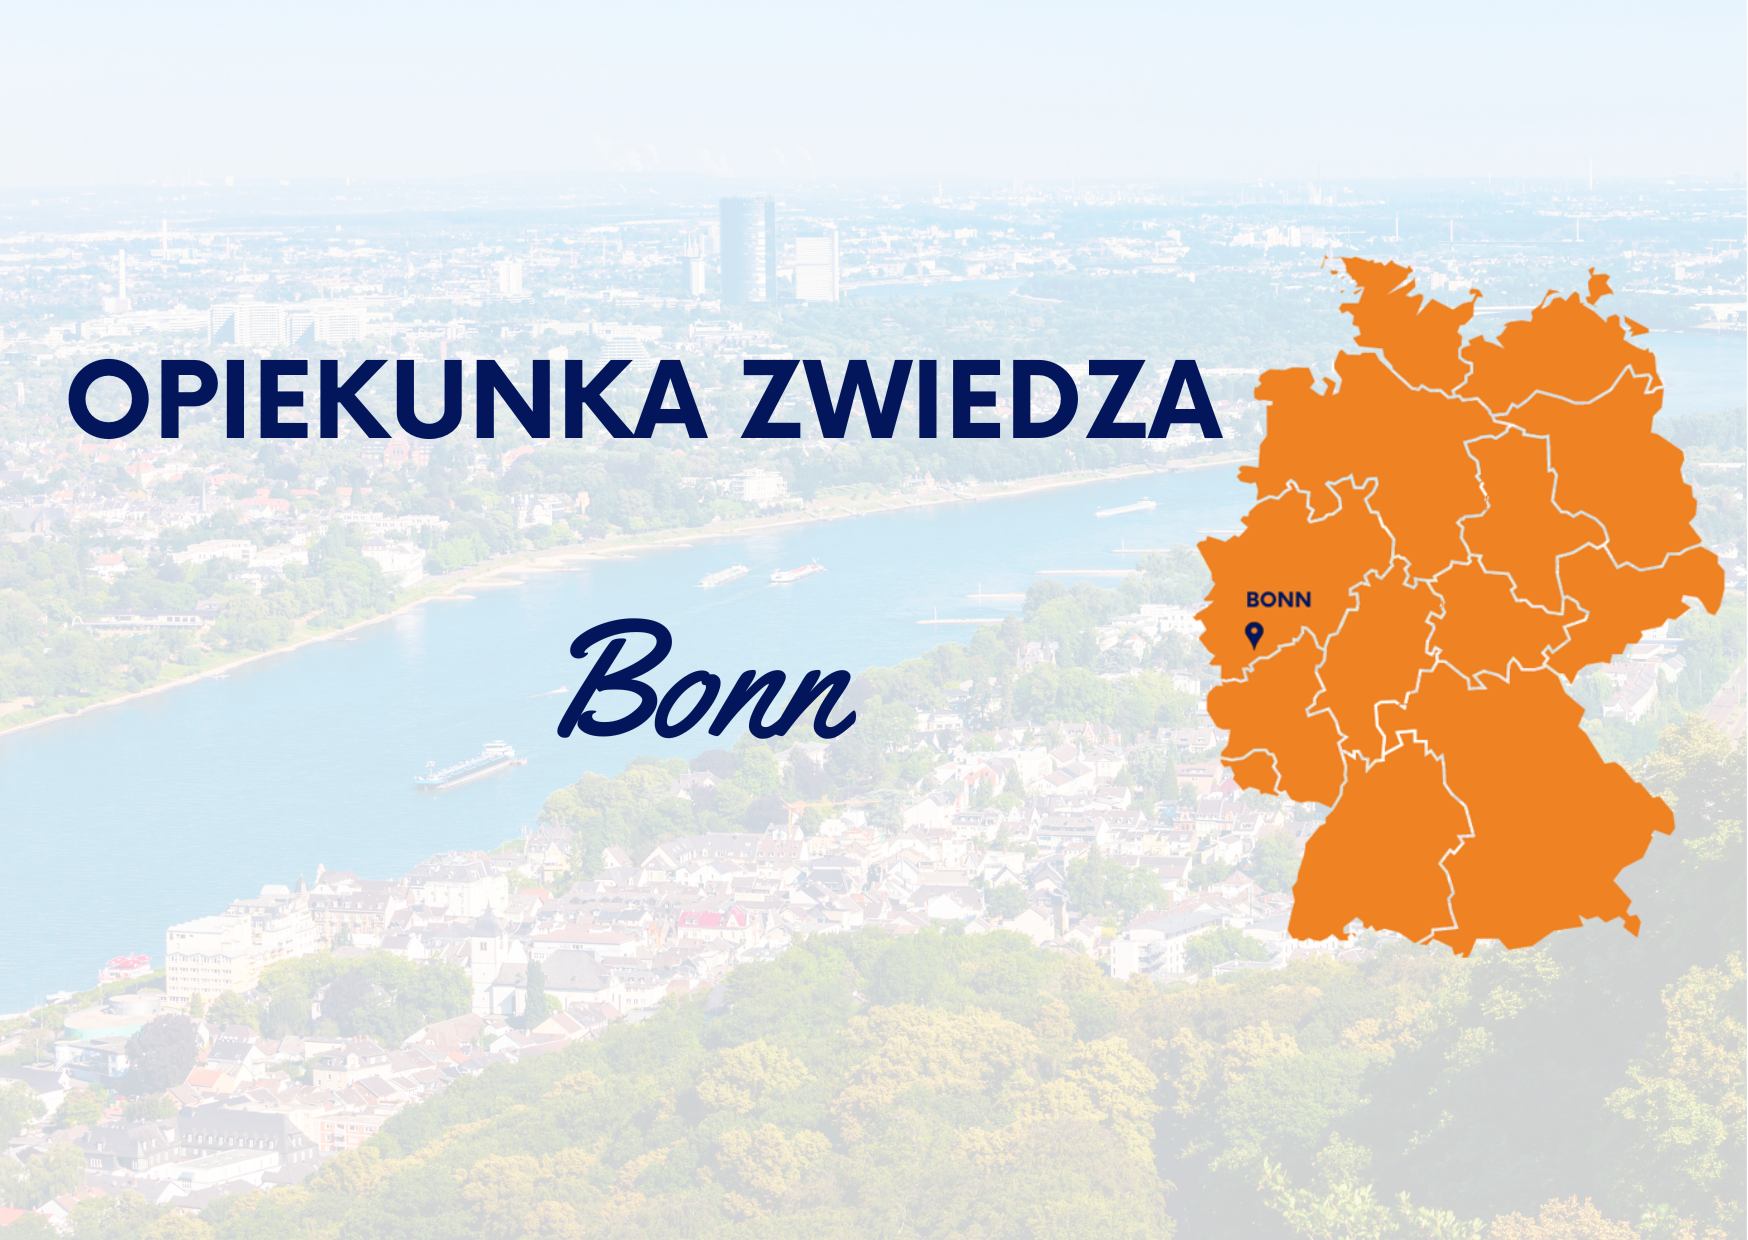 OPIEKUNKA ZWIEDZA – Bonn